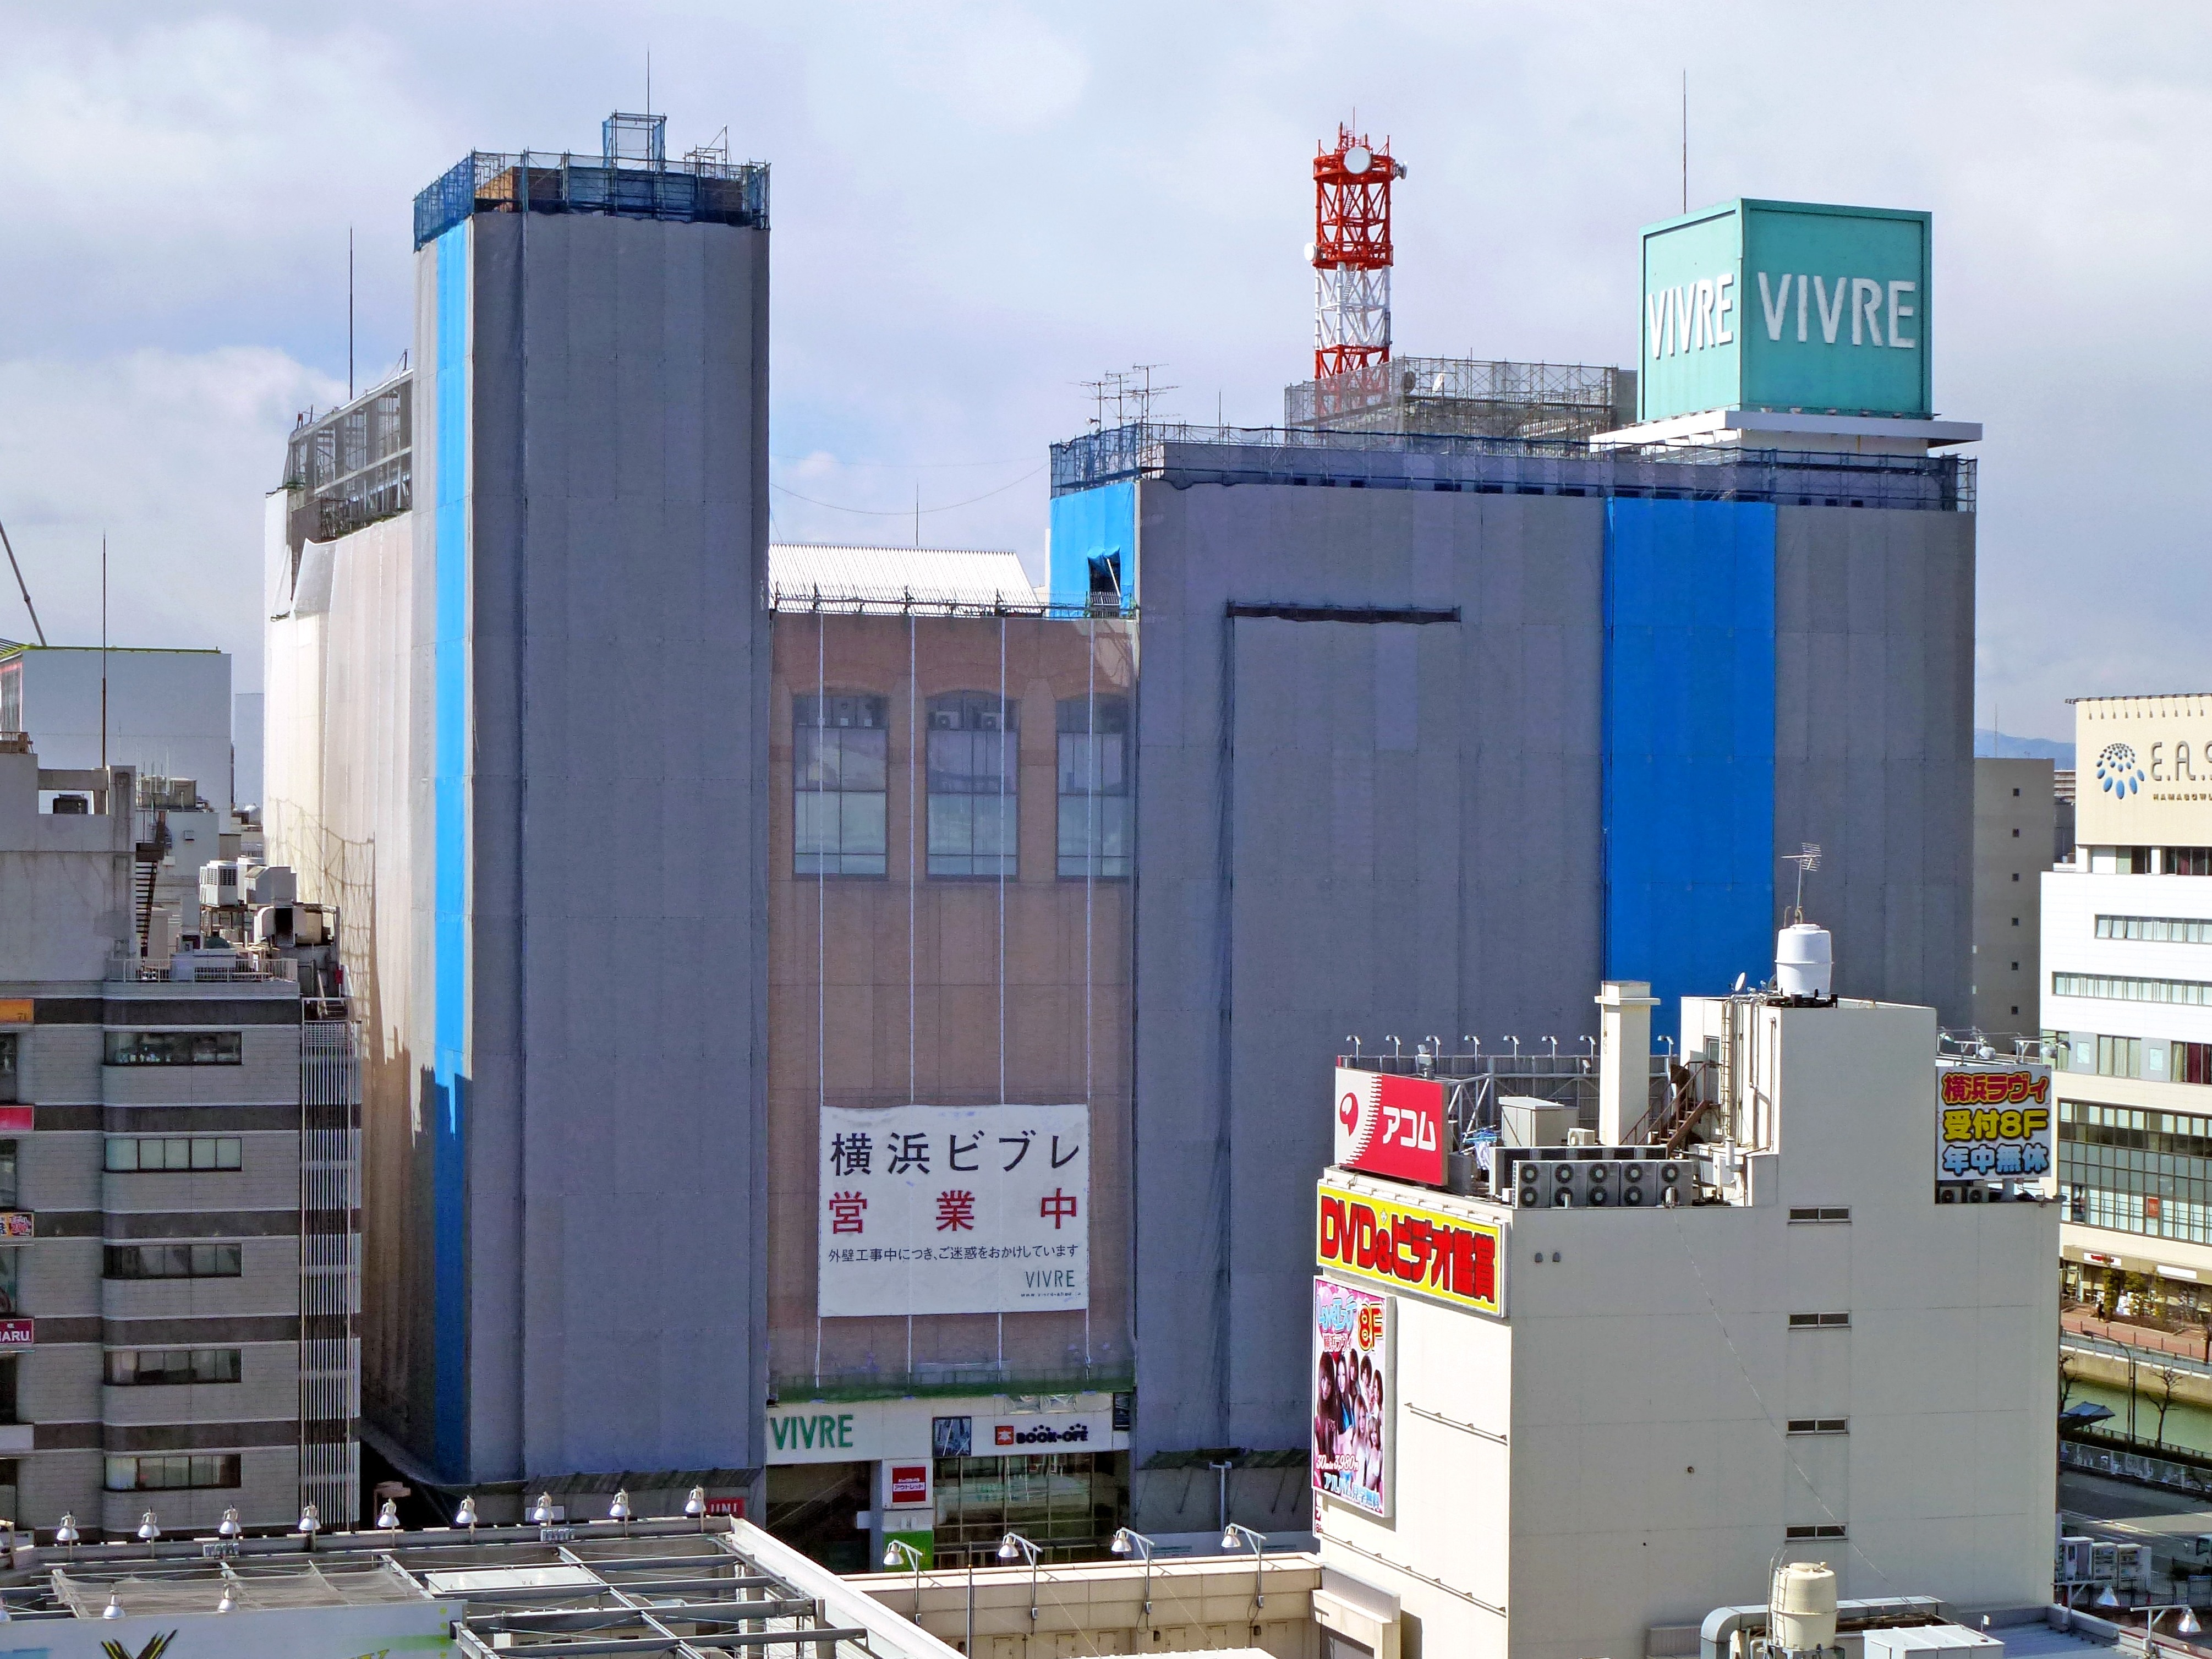 横浜ビブレ 10月10日リニューアル 神奈川初が22店舗 都市商業研究所